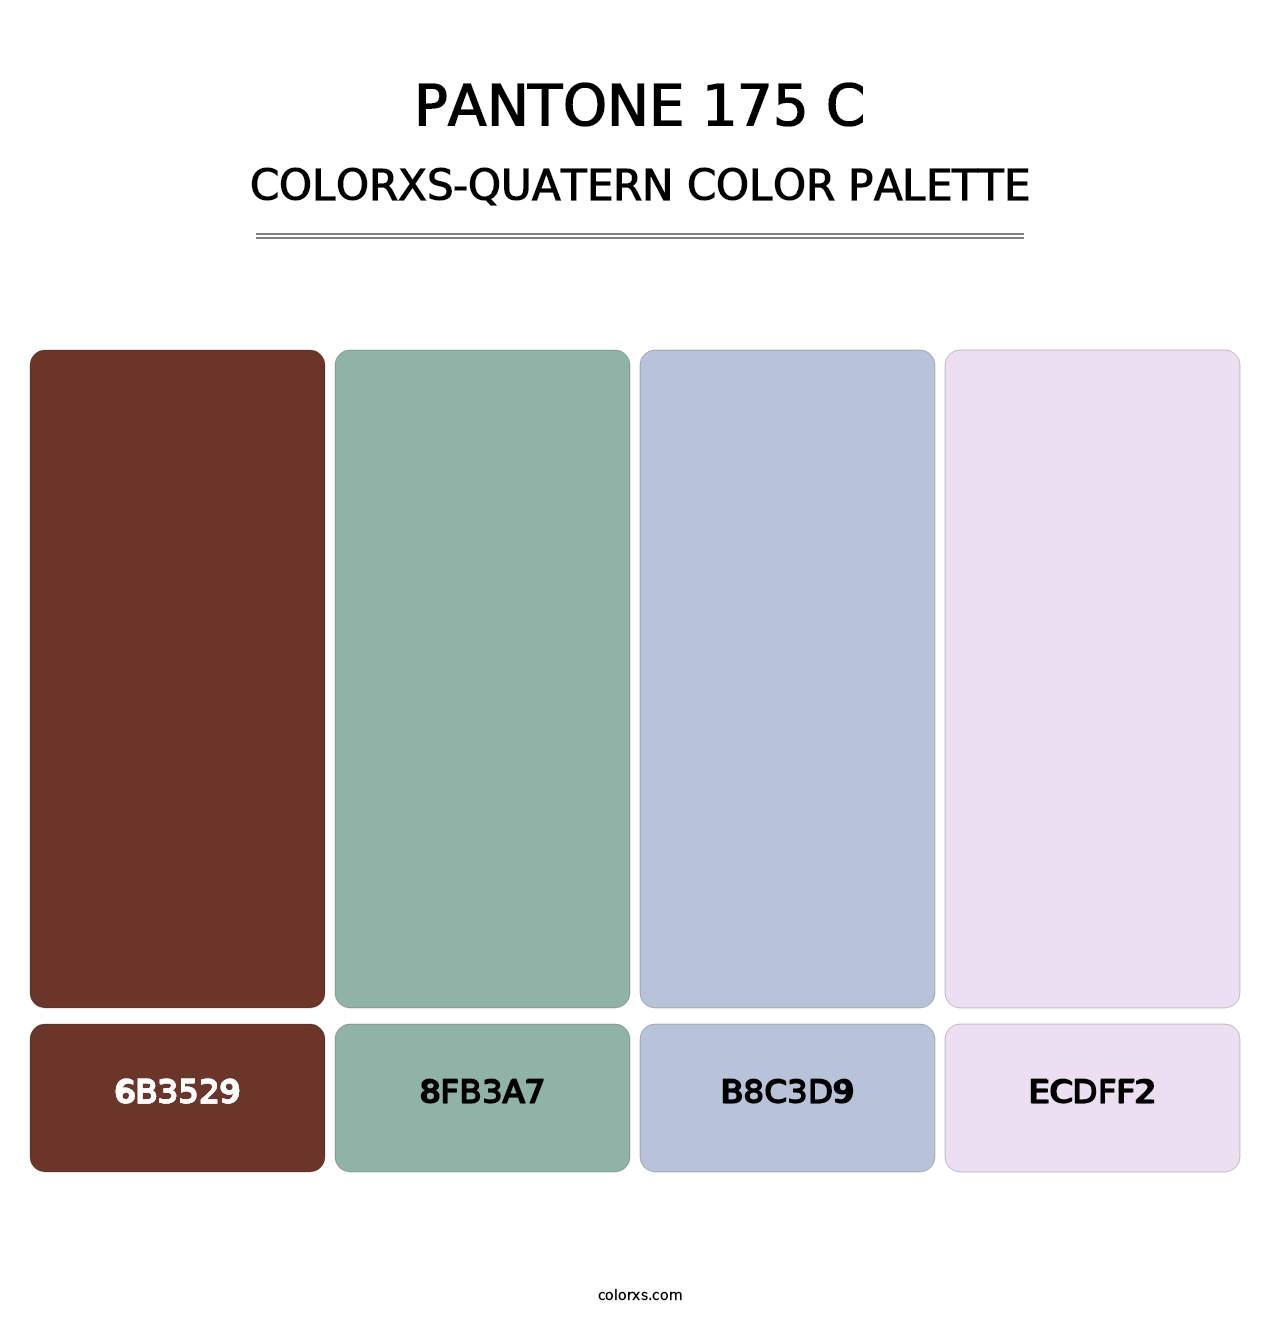 PANTONE 175 C - Colorxs Quatern Palette